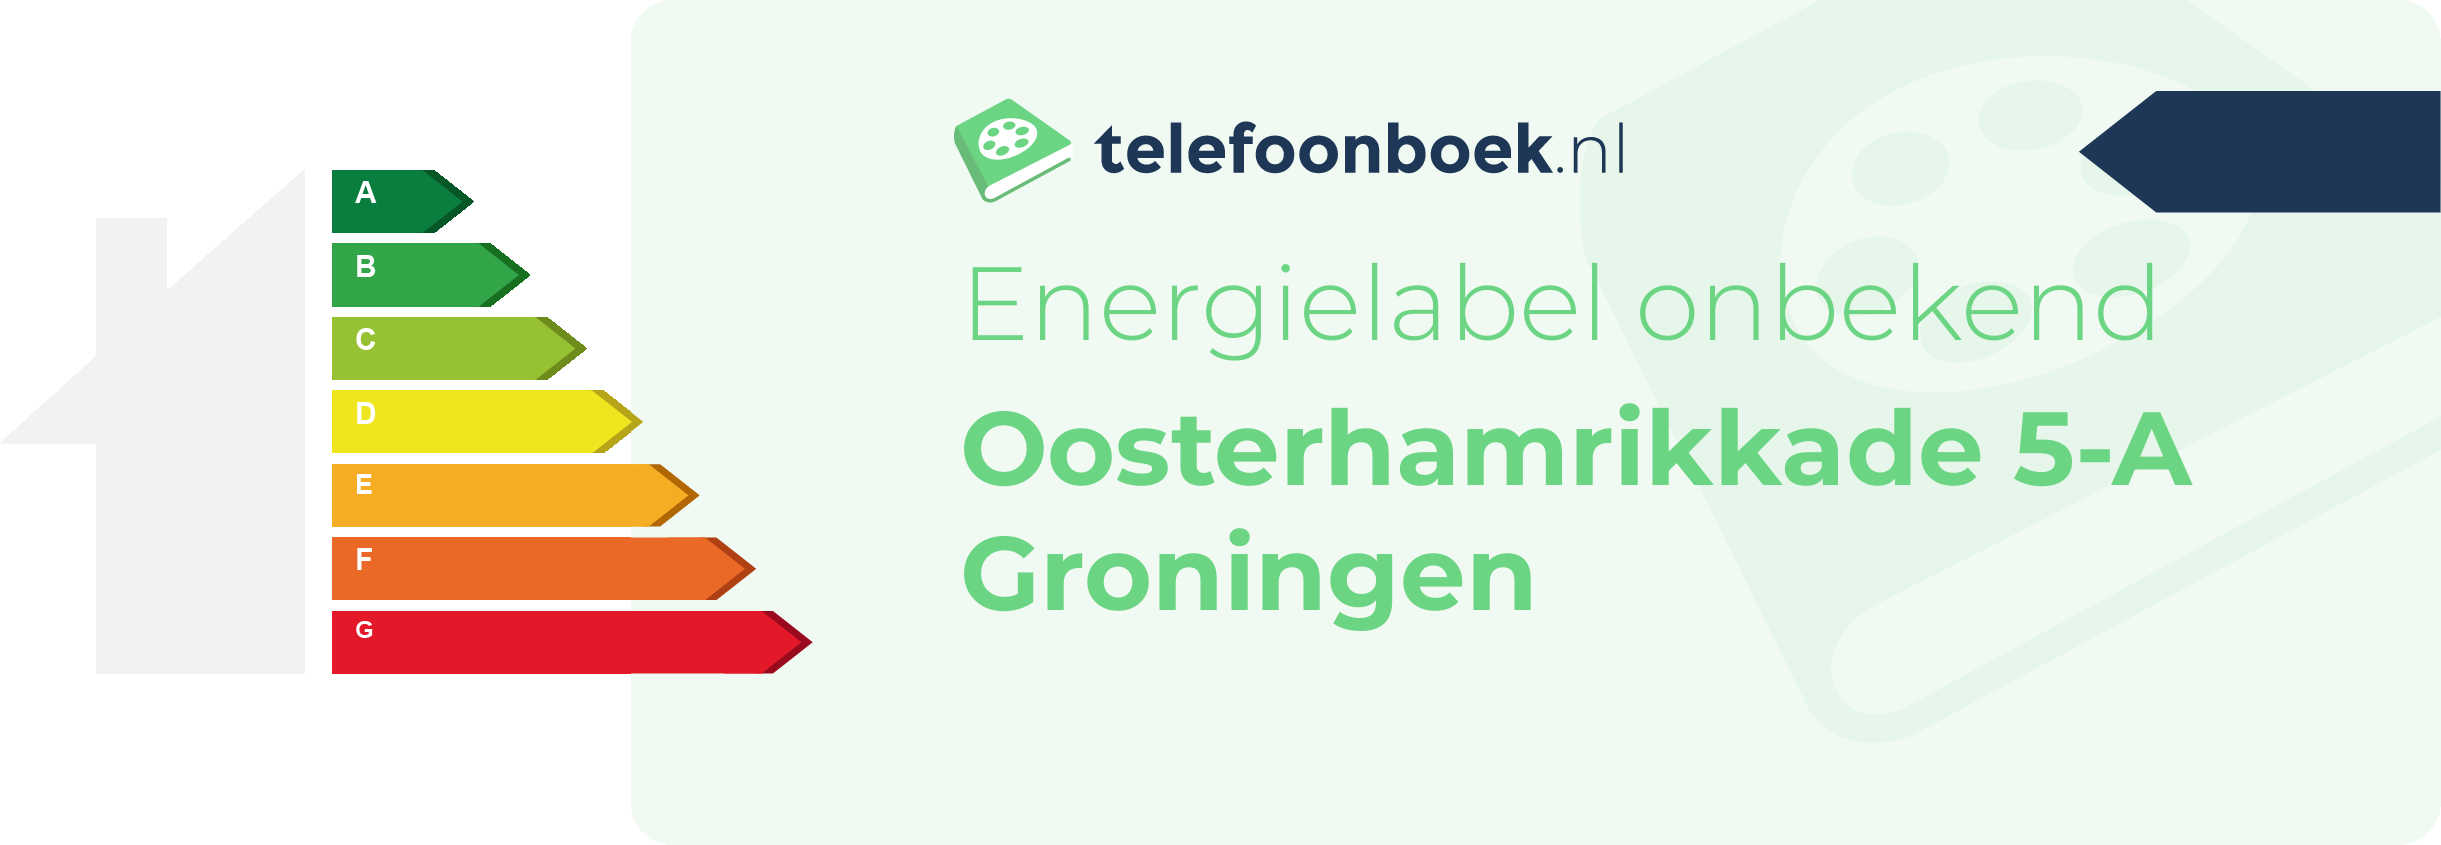 Energielabel Oosterhamrikkade 5-A Groningen